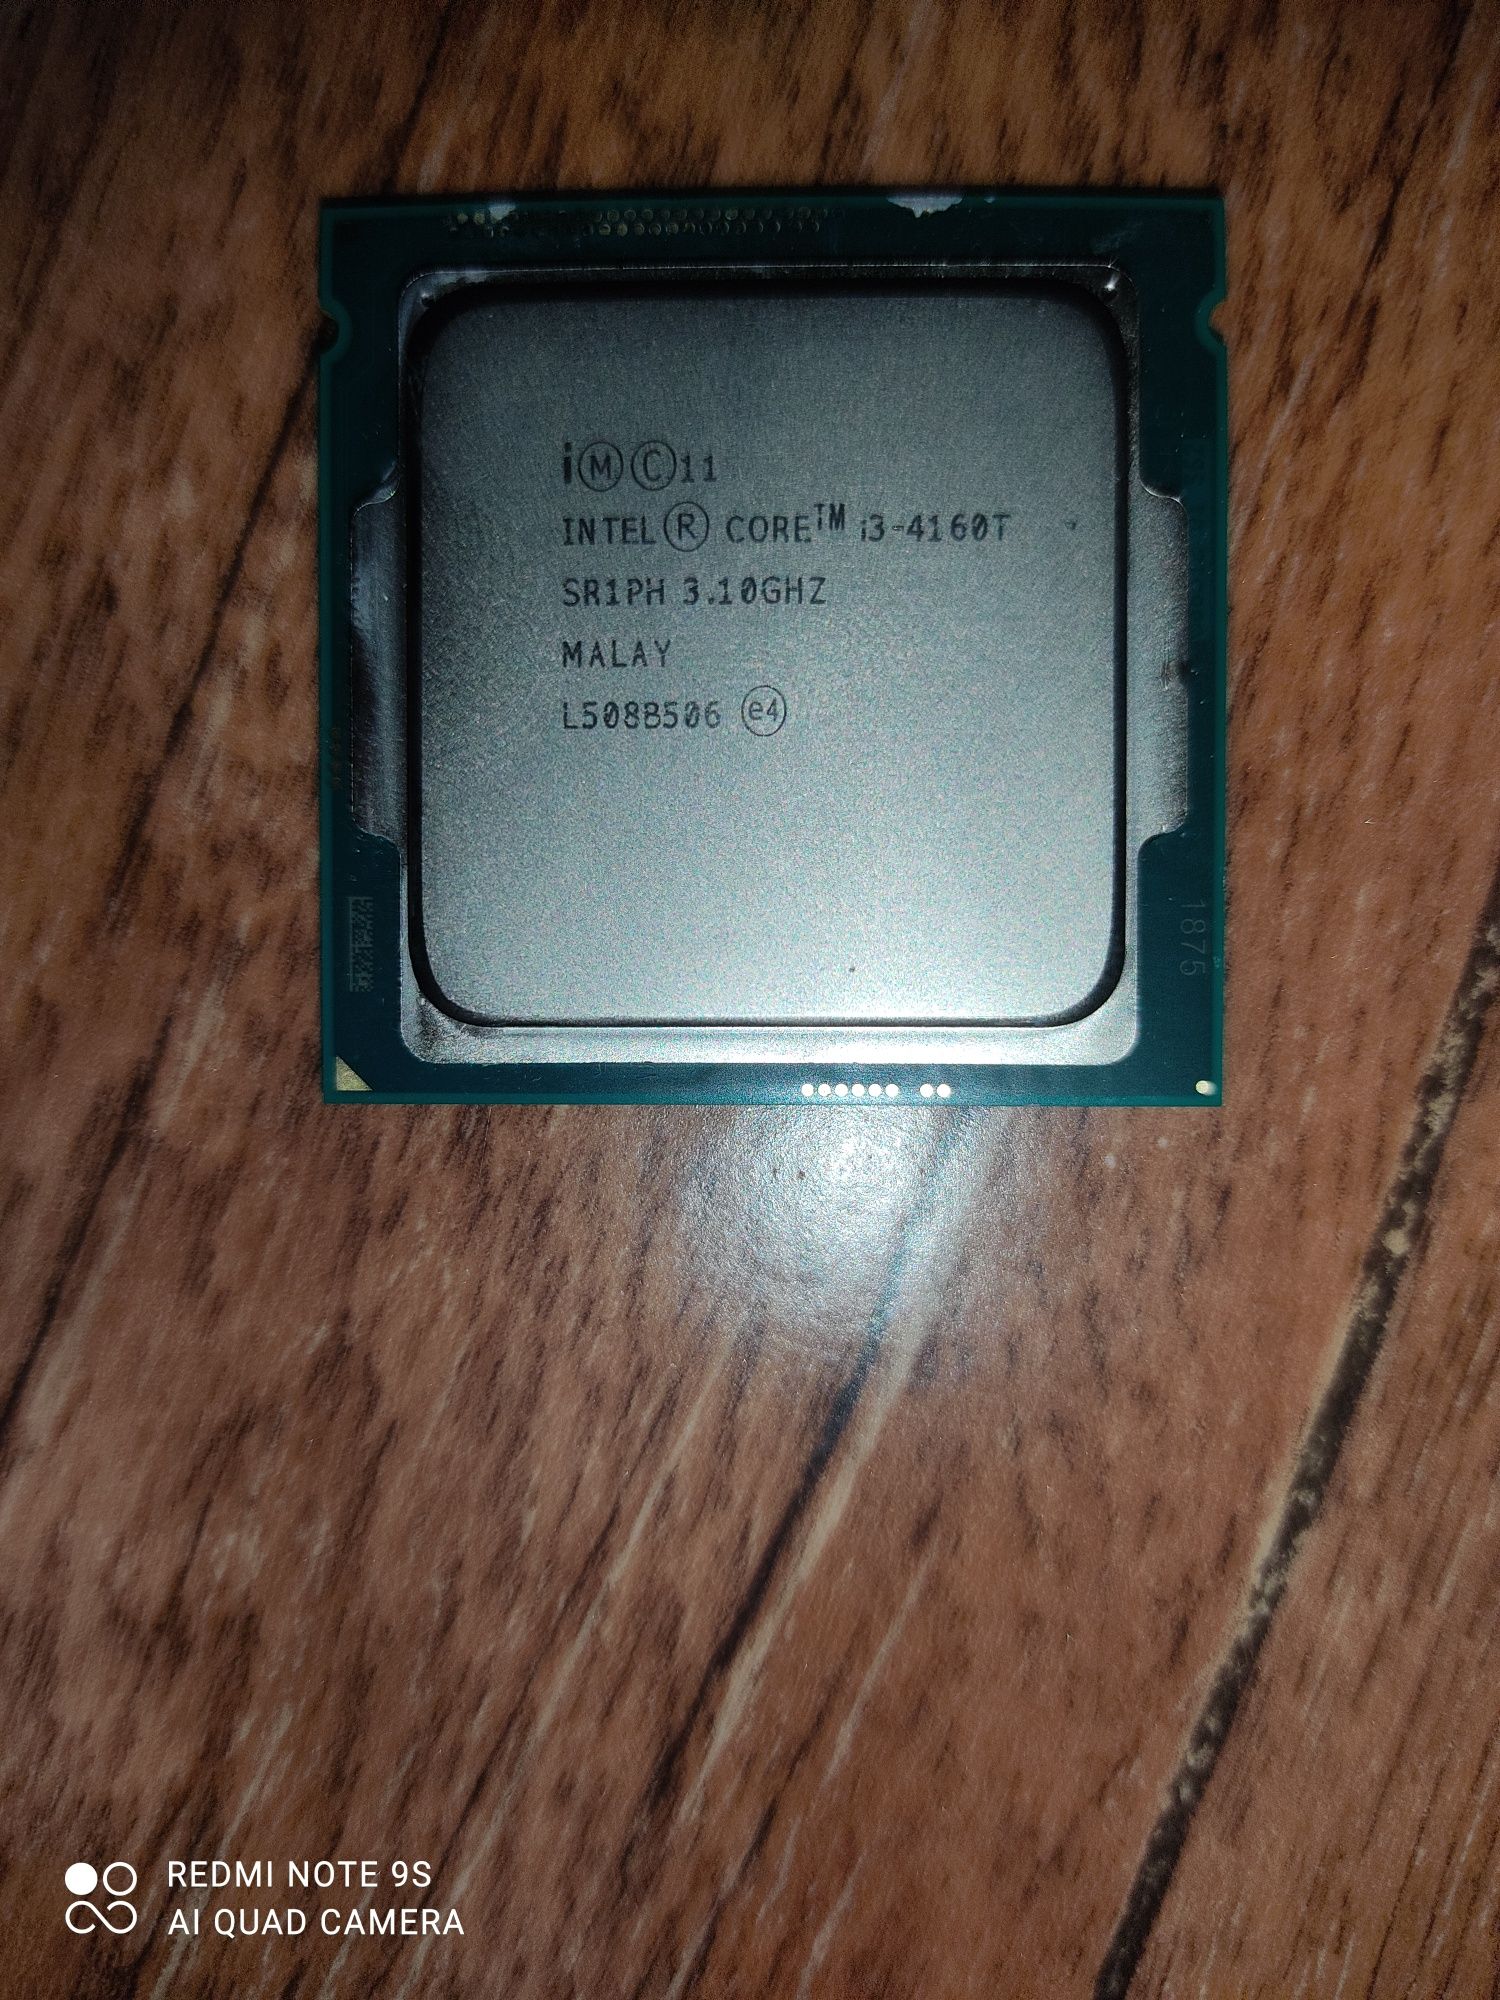 Intel Core I3-4160T